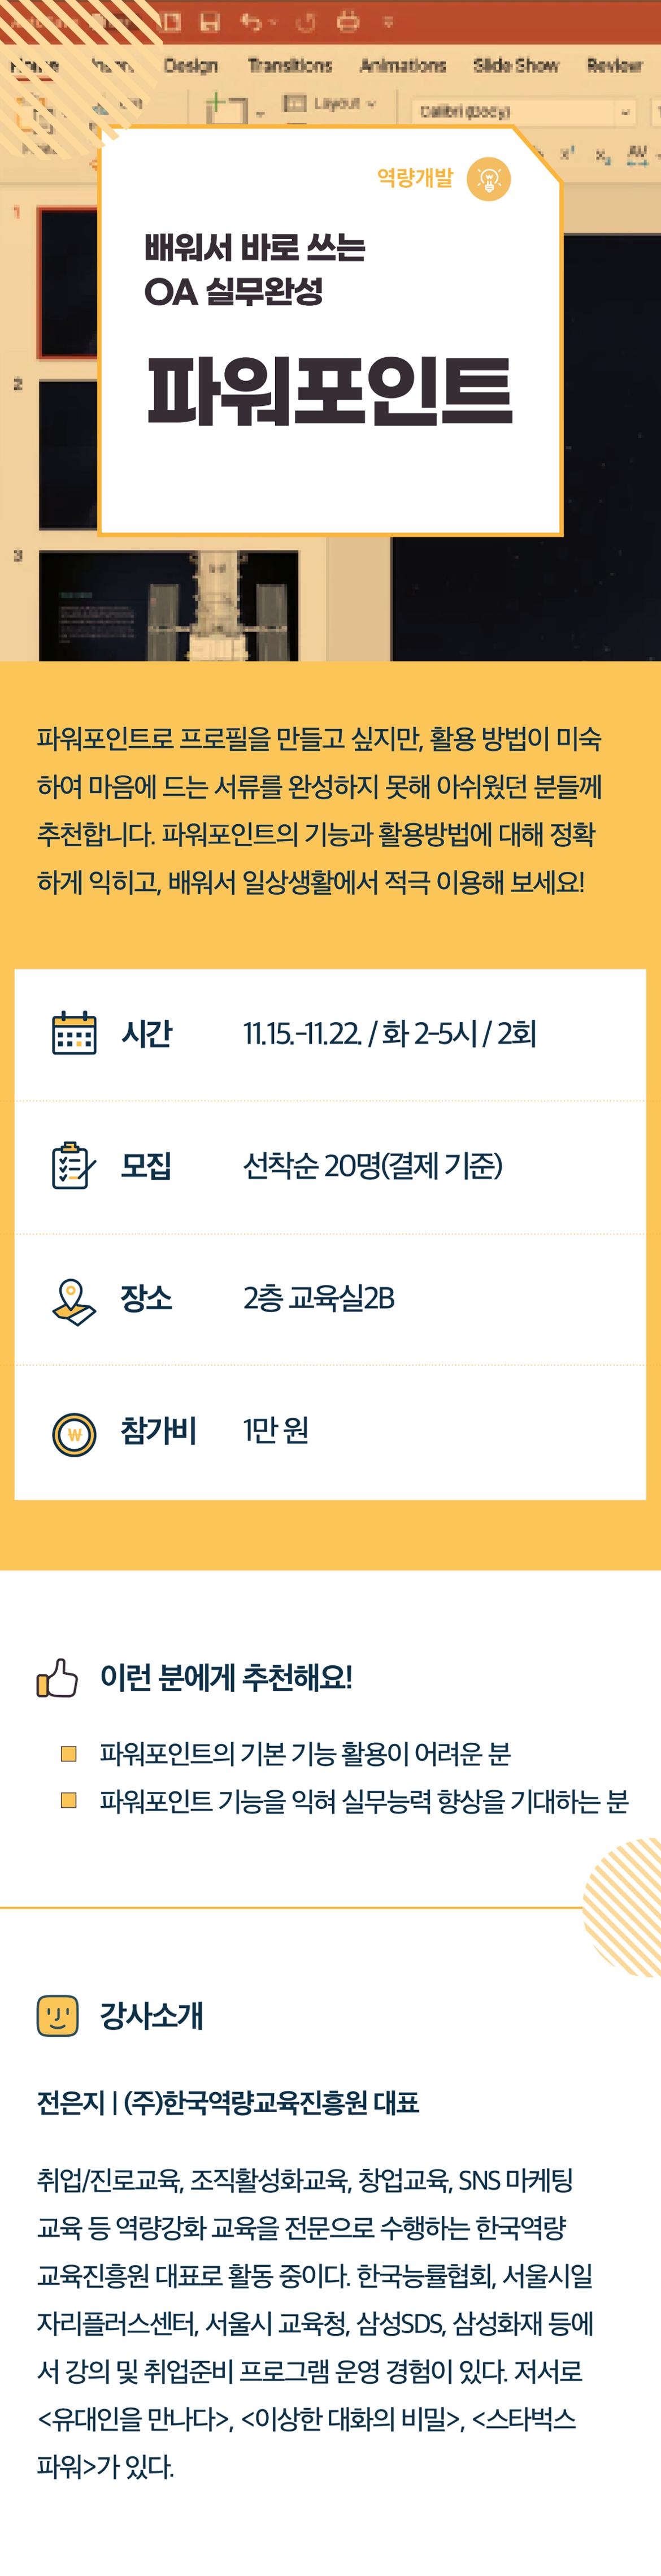 2022서부캠하반기_역량개발03_파워포인트(0721수정).jpg